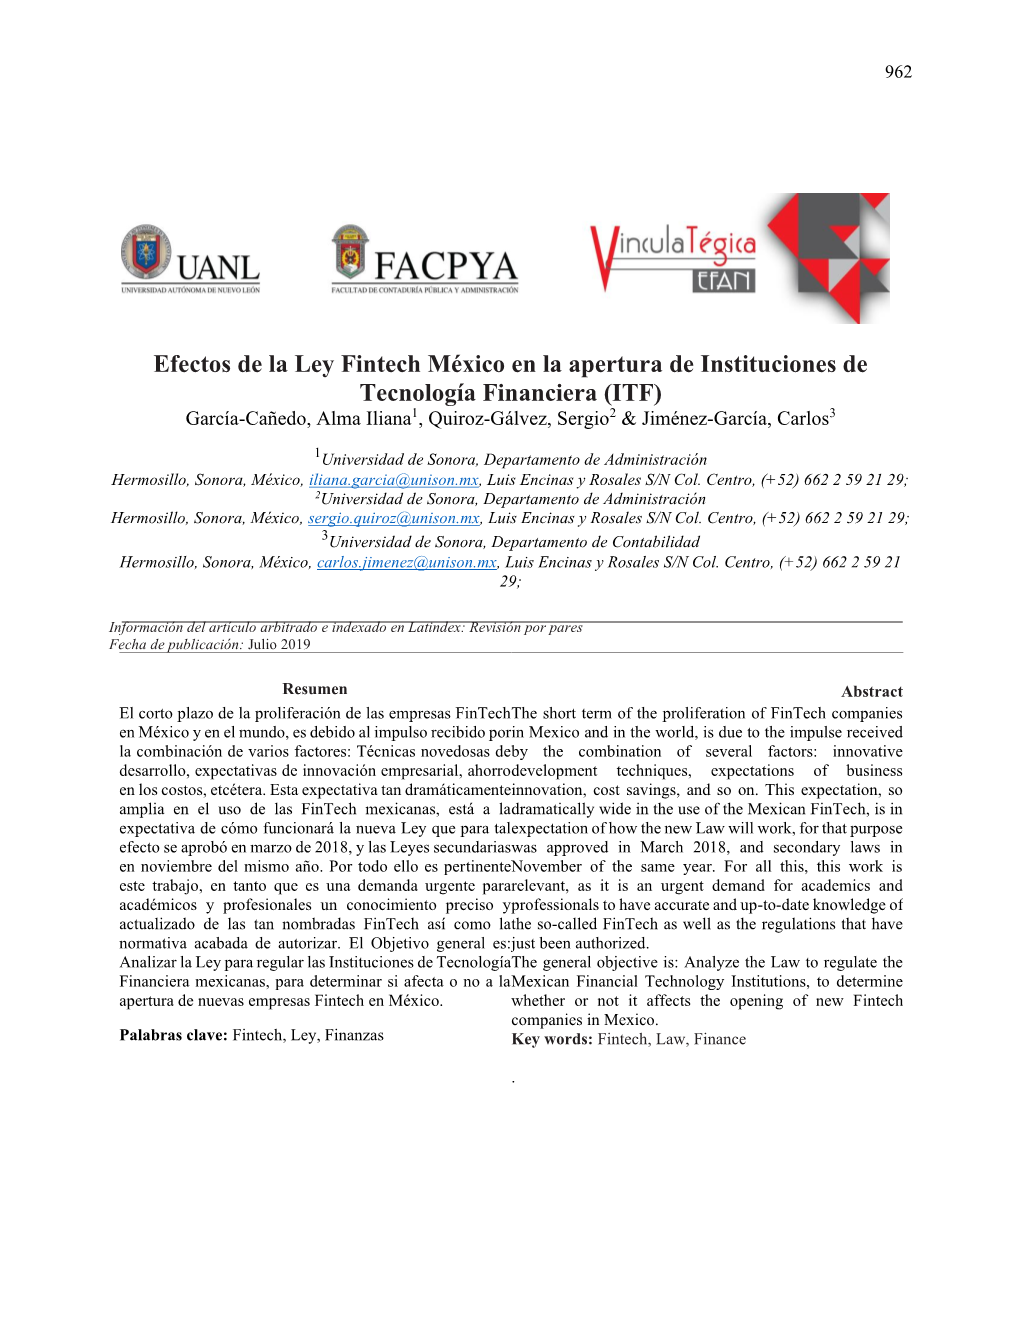 Efectos De La Ley Fintech México En La Apertura De Instituciones De